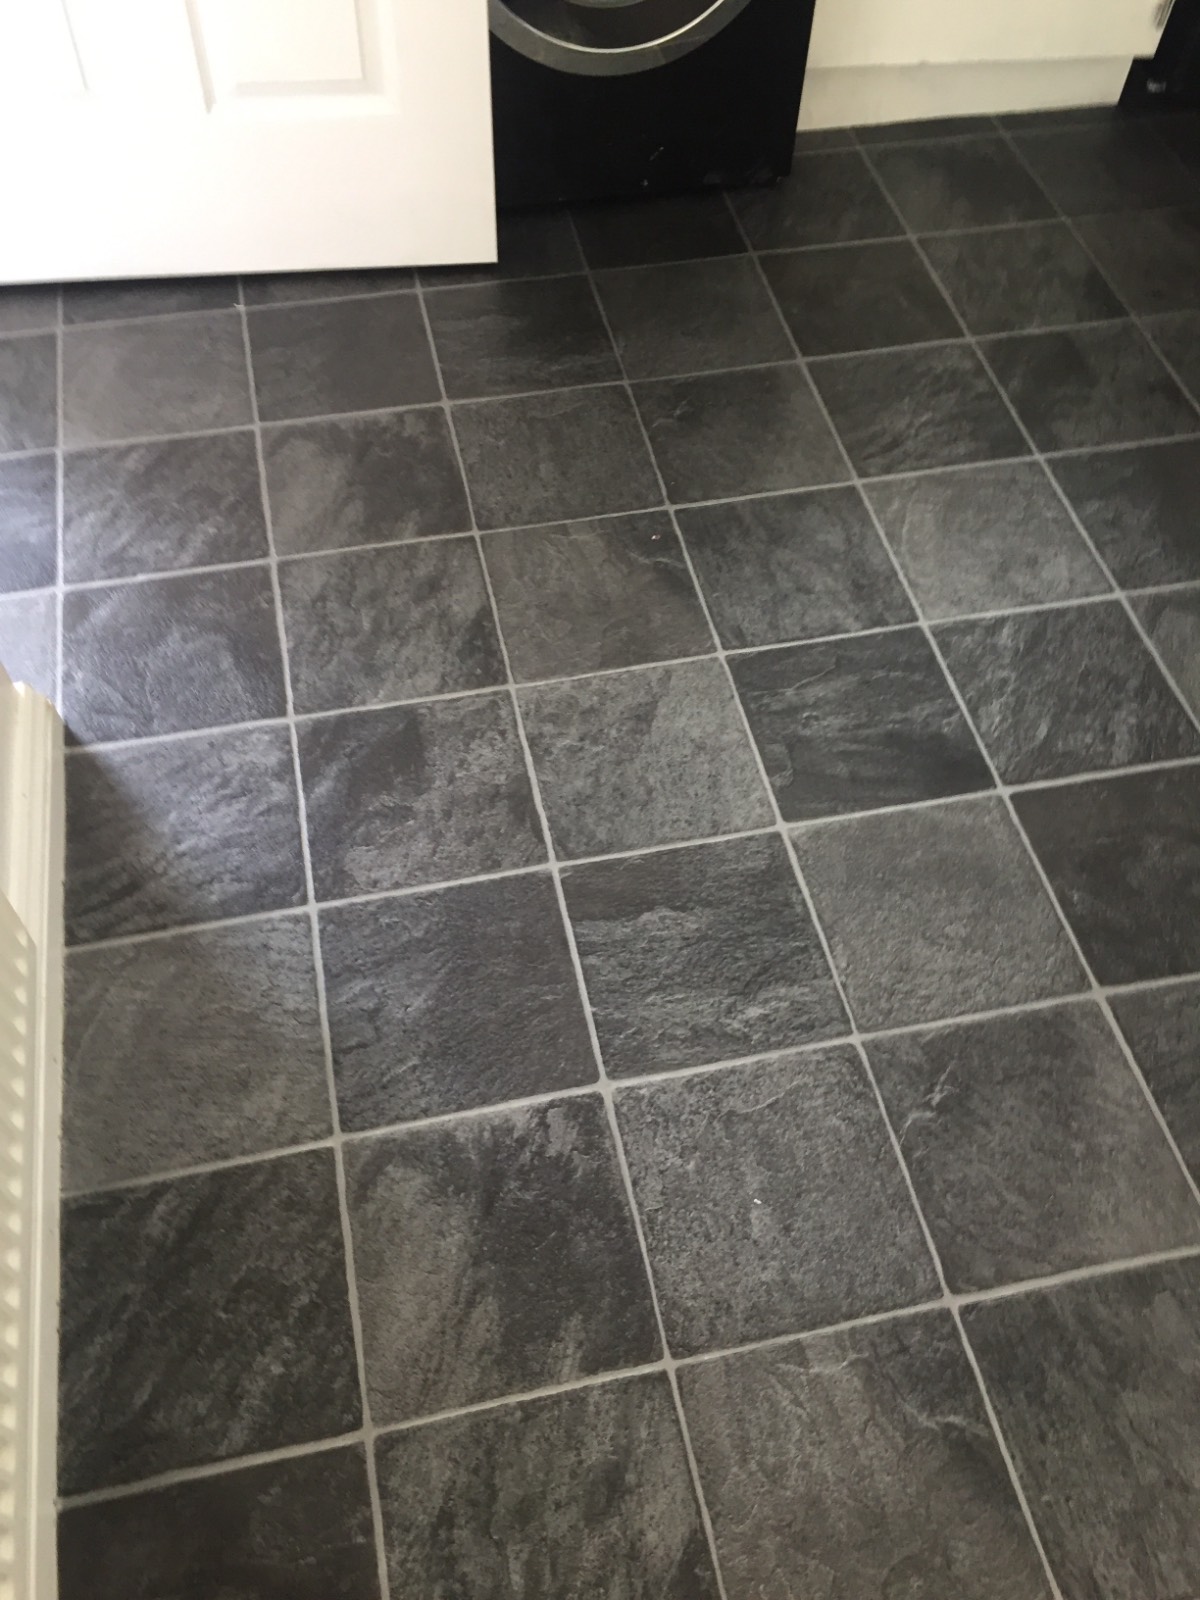 dark tile design vinyl flooring in kitchen 